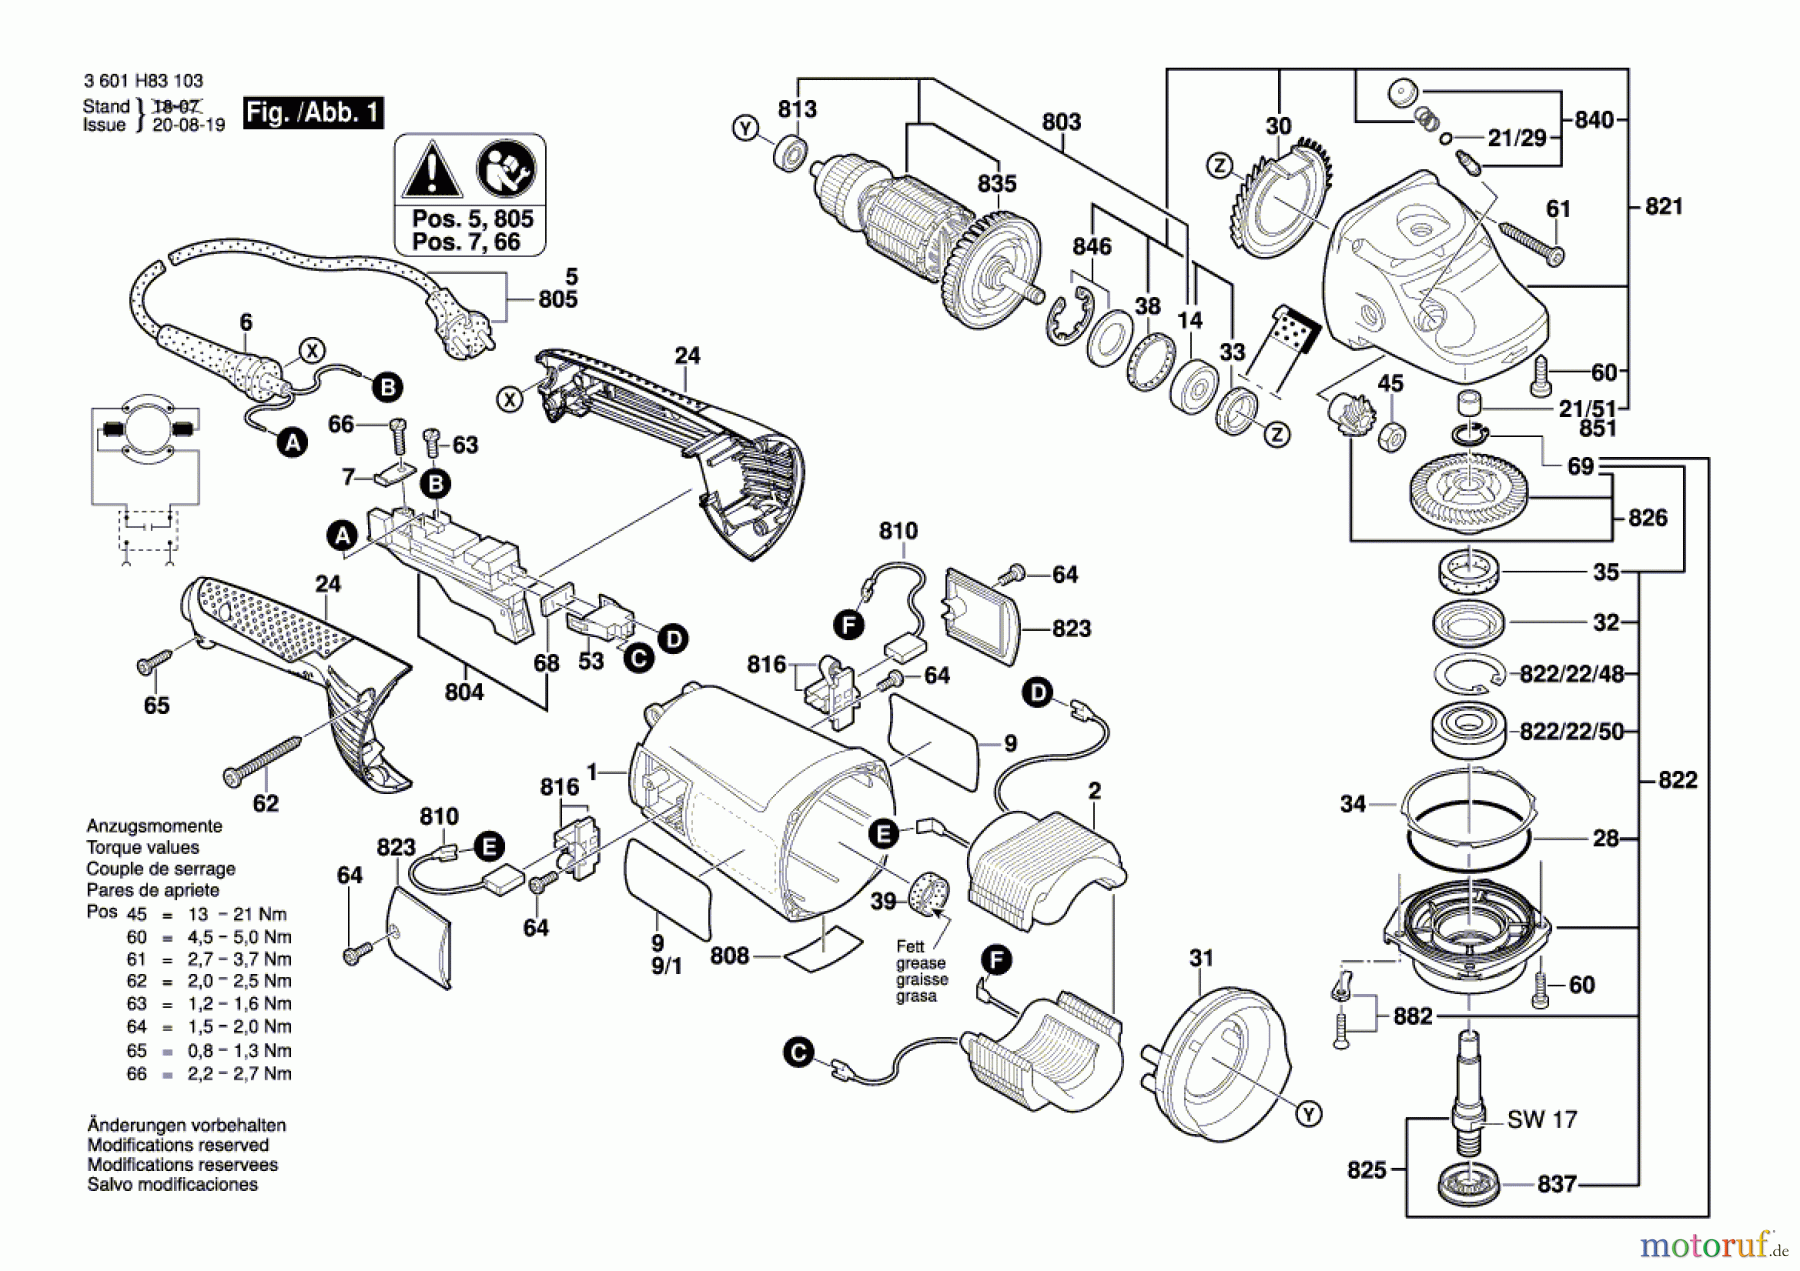  Bosch Werkzeug Winkelschleifer GWS 24-230 H Seite 1